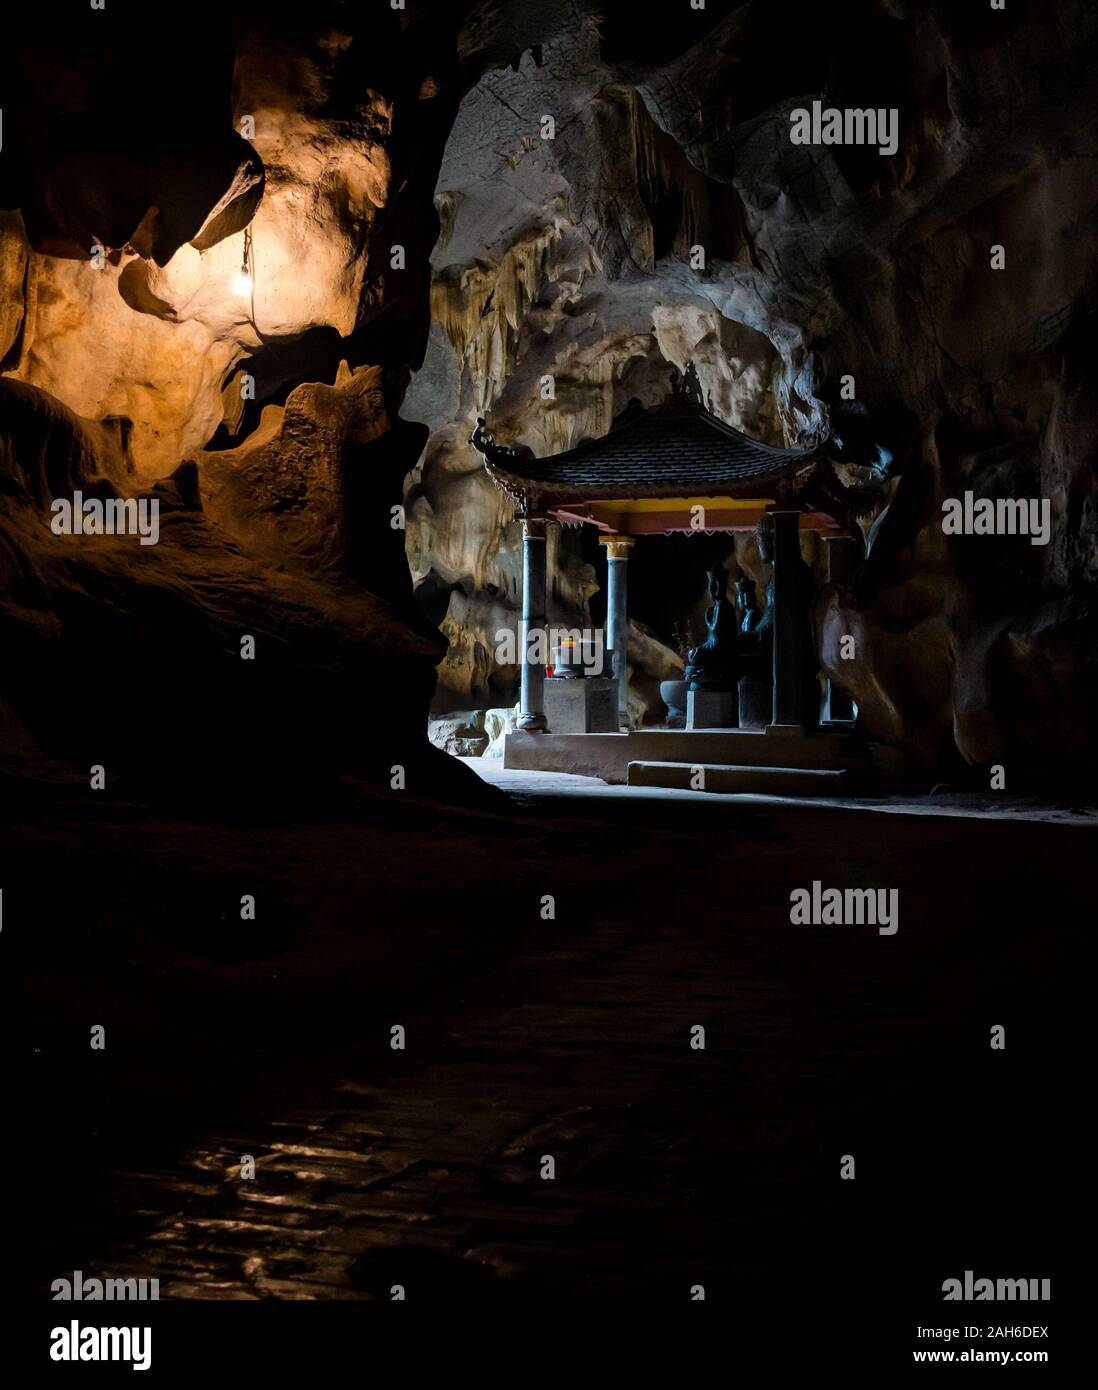 Lieu de culte à l'intérieur de grotte, temple bouddhiste vietnamienne, la Pagode Bich Dong, Tam Coc, Ninh Binh, Vietnam, Asie Banque D'Images